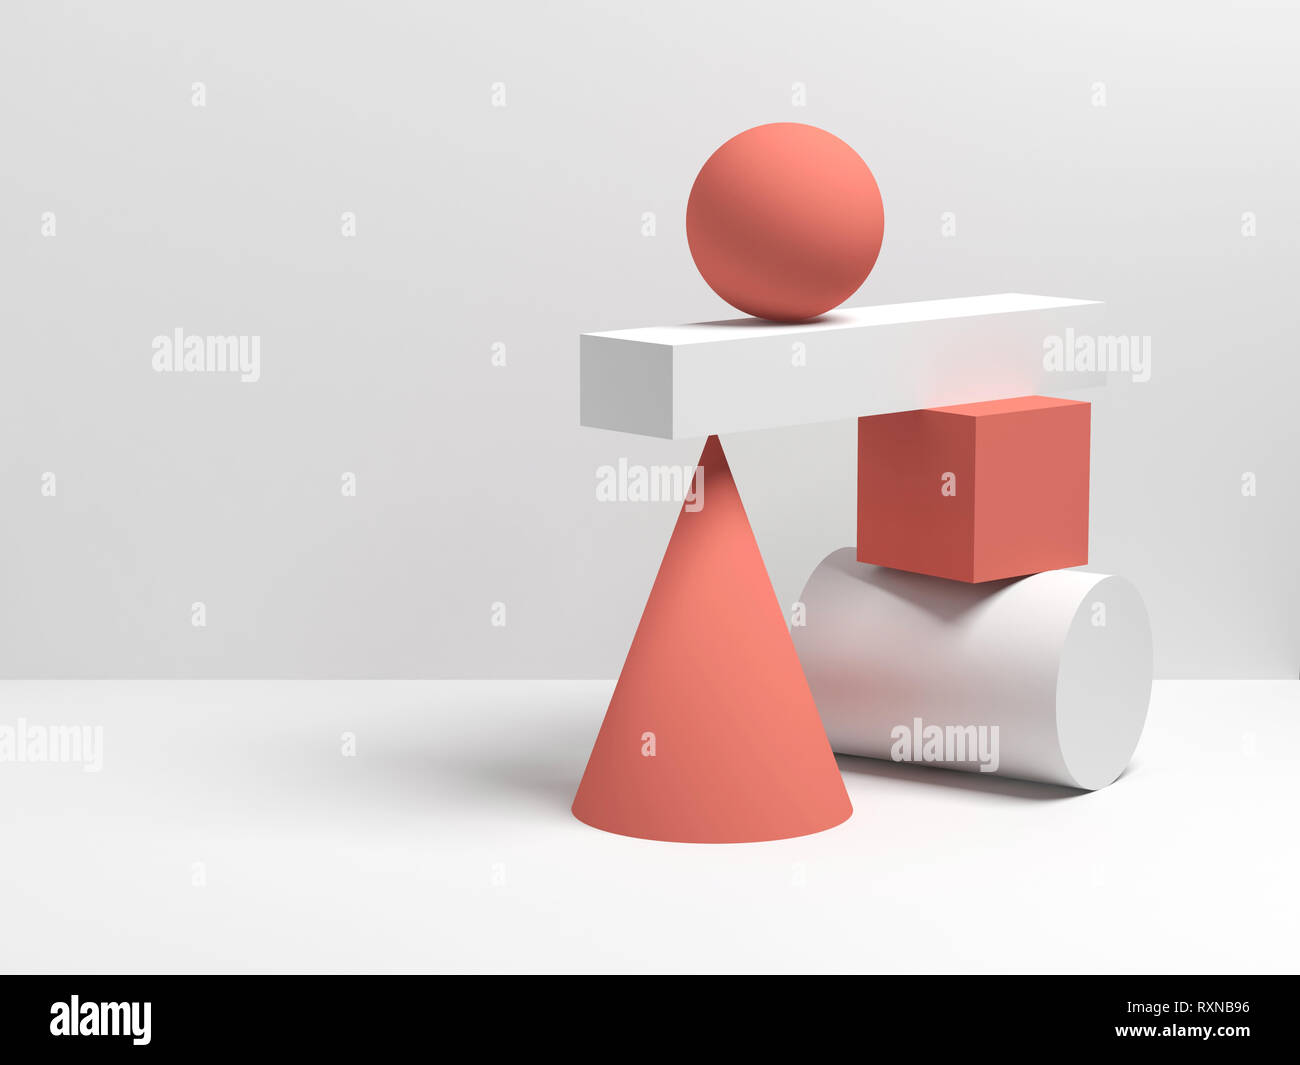 Résumé de la vie de l'installation d'équilibre toujours le rouge et le blanc des formes géométriques primitives. Illustration 3D render Banque D'Images